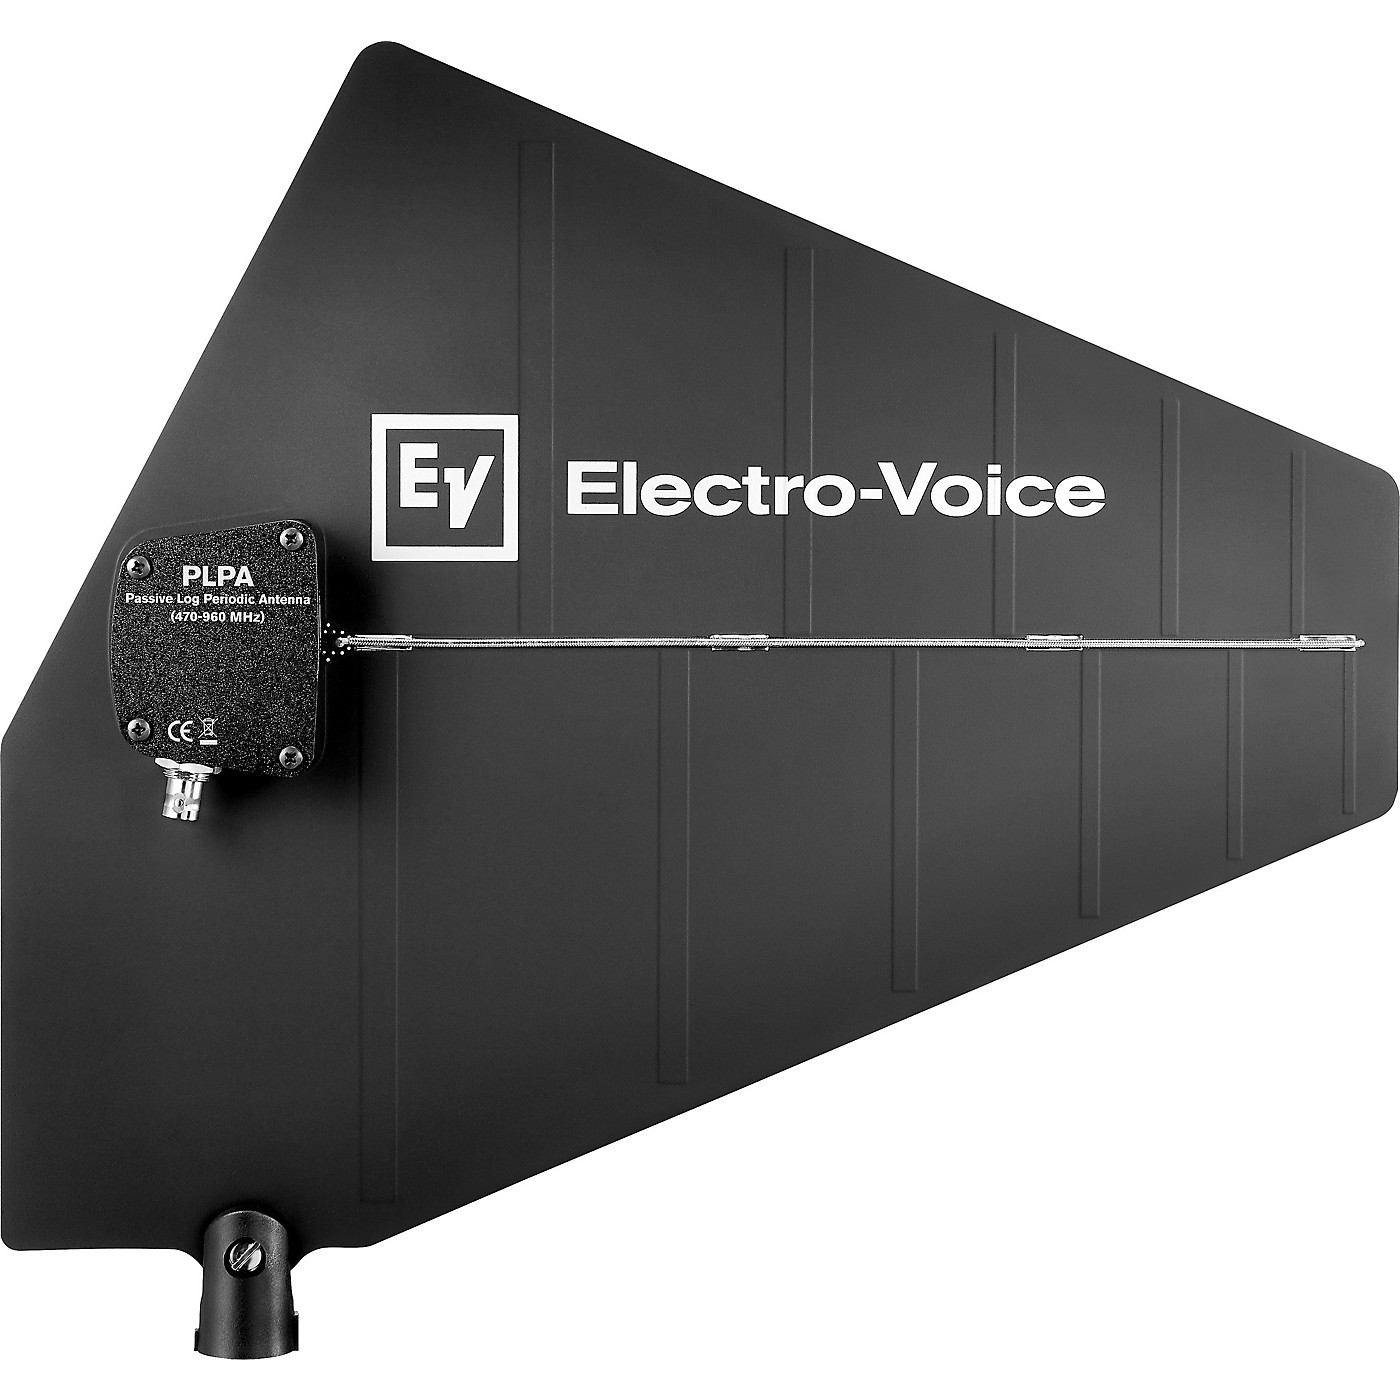 Electro-Voice Passive log periodic antenna thumbnail